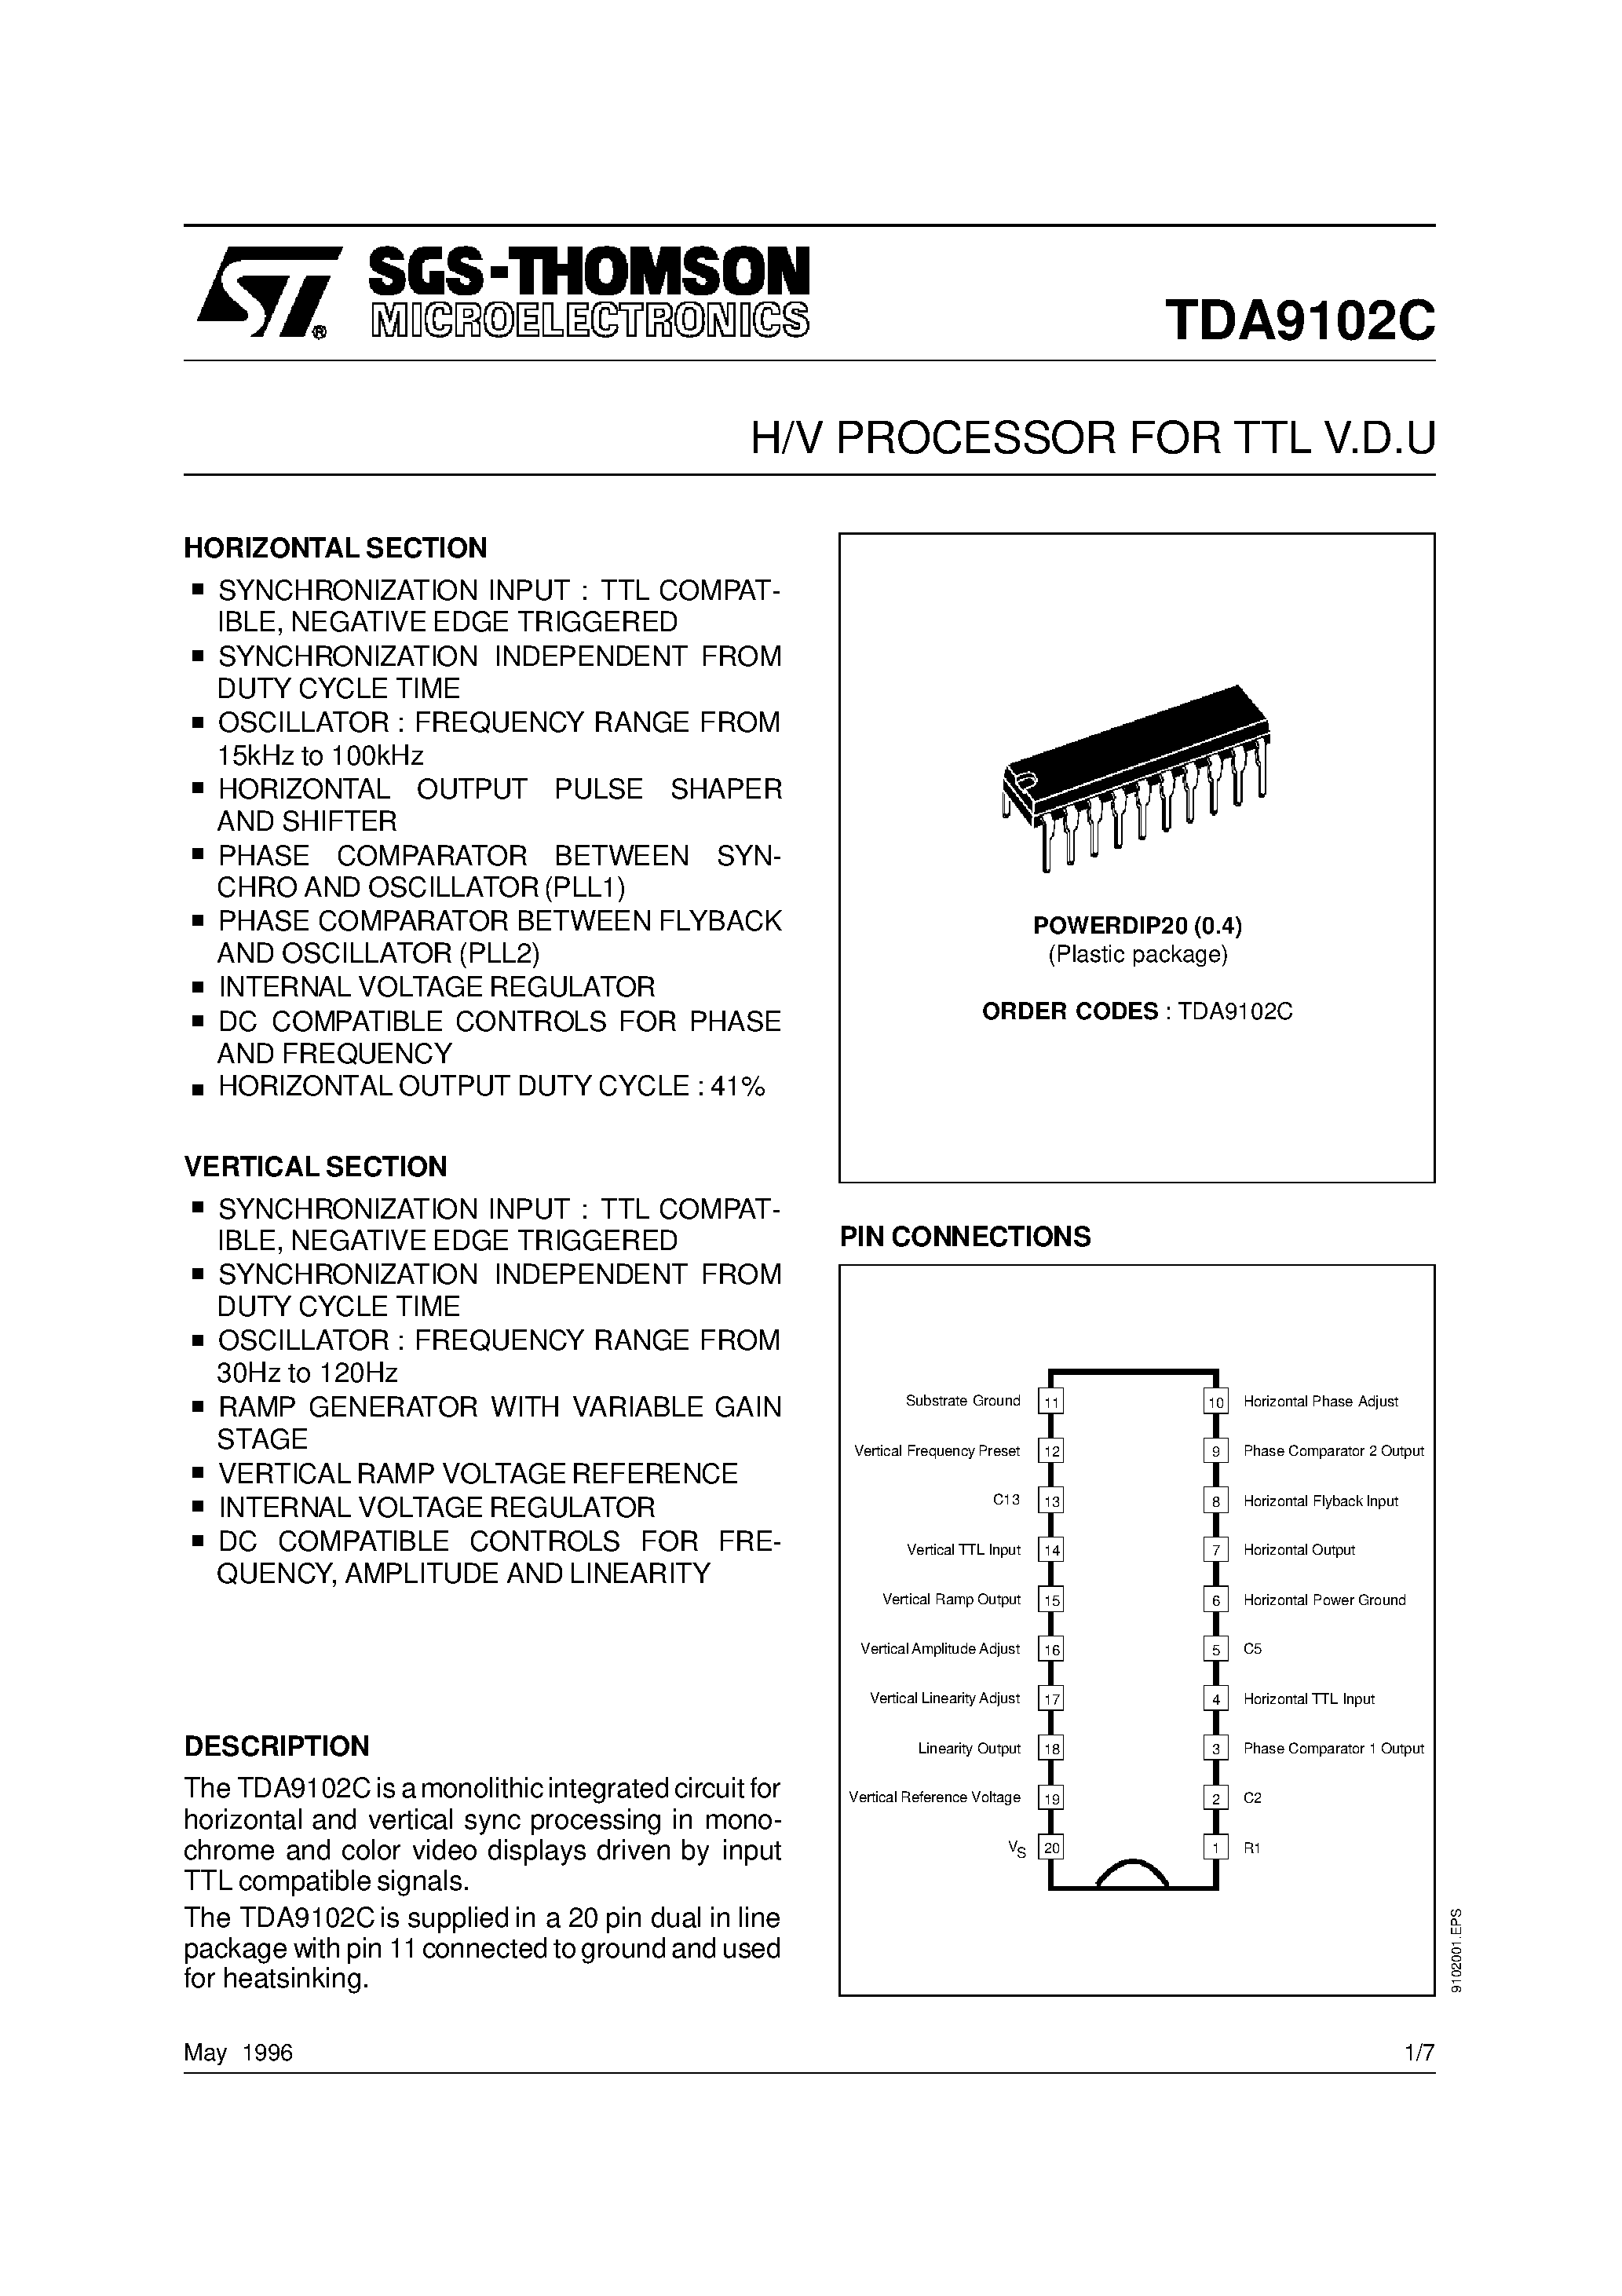 Datasheet TDA9102C - H/V PROCESSOR FOR TTL V.D.U page 1